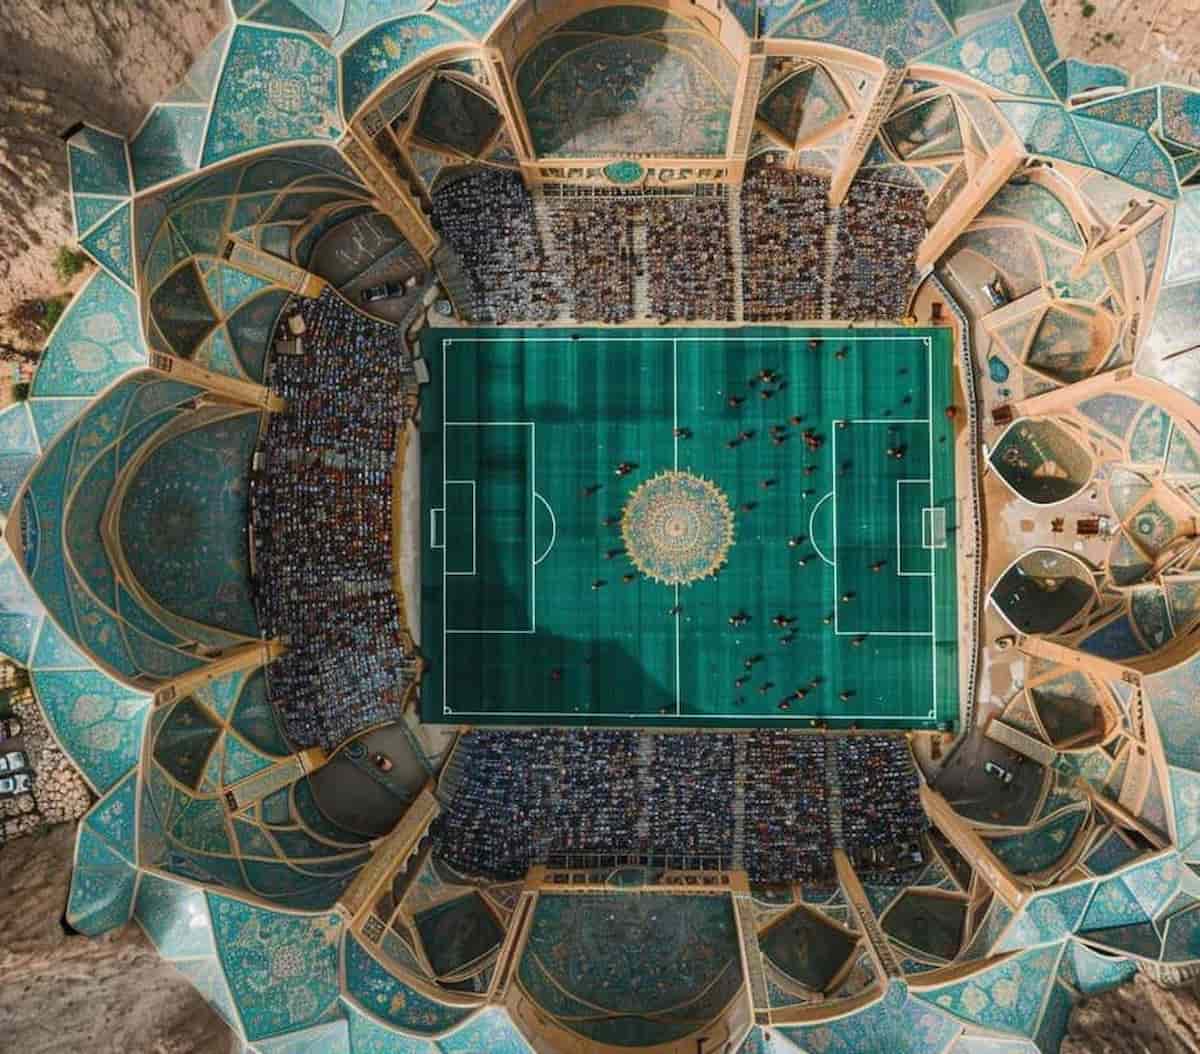 استادیوم فوتبال با معماری سنتی ایرانی به سبک هوش مصنوعی!!